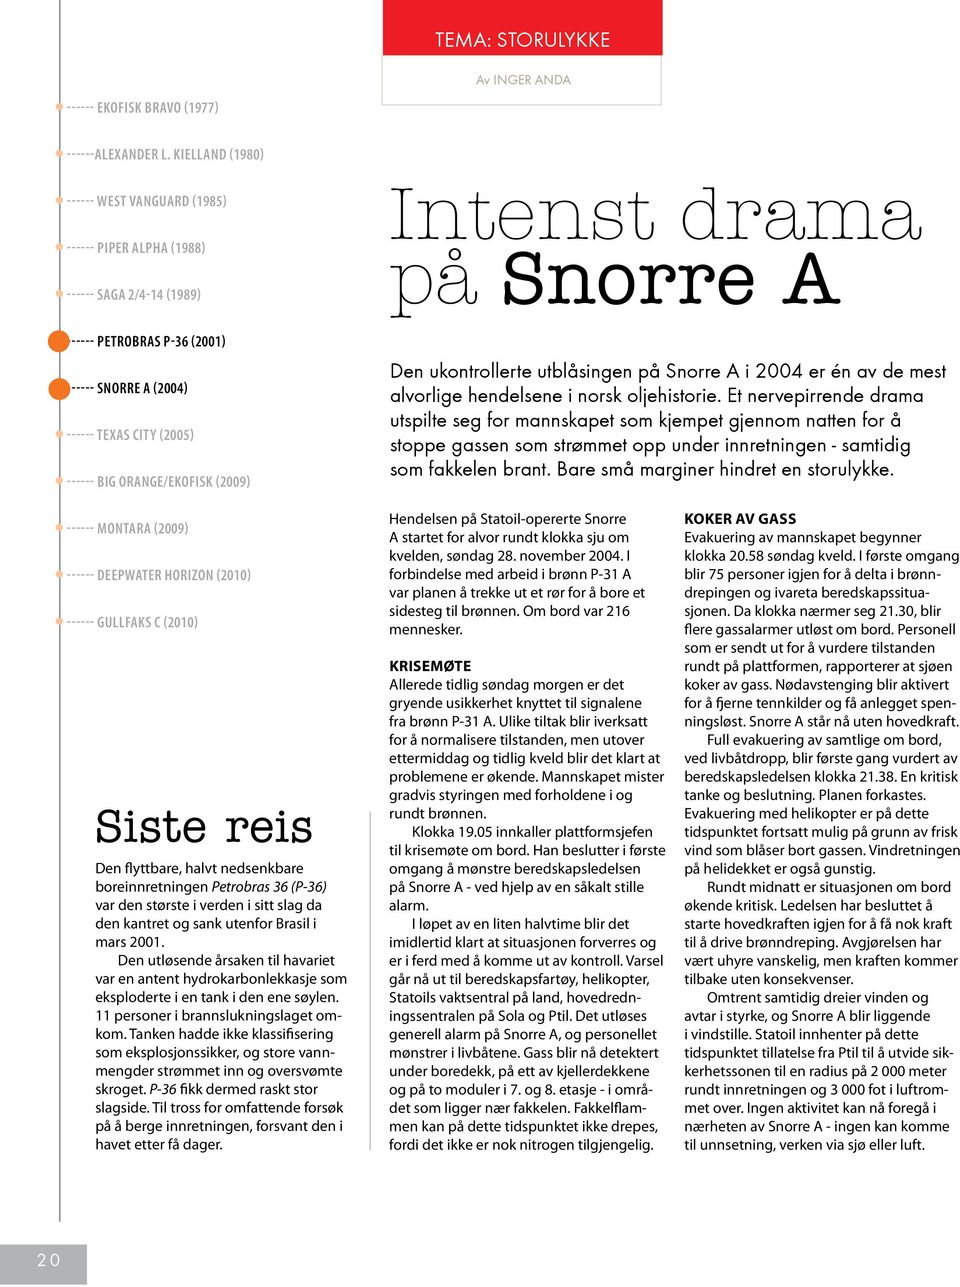 ------ Big Orange/Ekofisk (2009) Den ukontrollerte utblåsingen på Snorre A i 2004 er én av de mest alvorlige hendelsene i norsk oljehistorie.